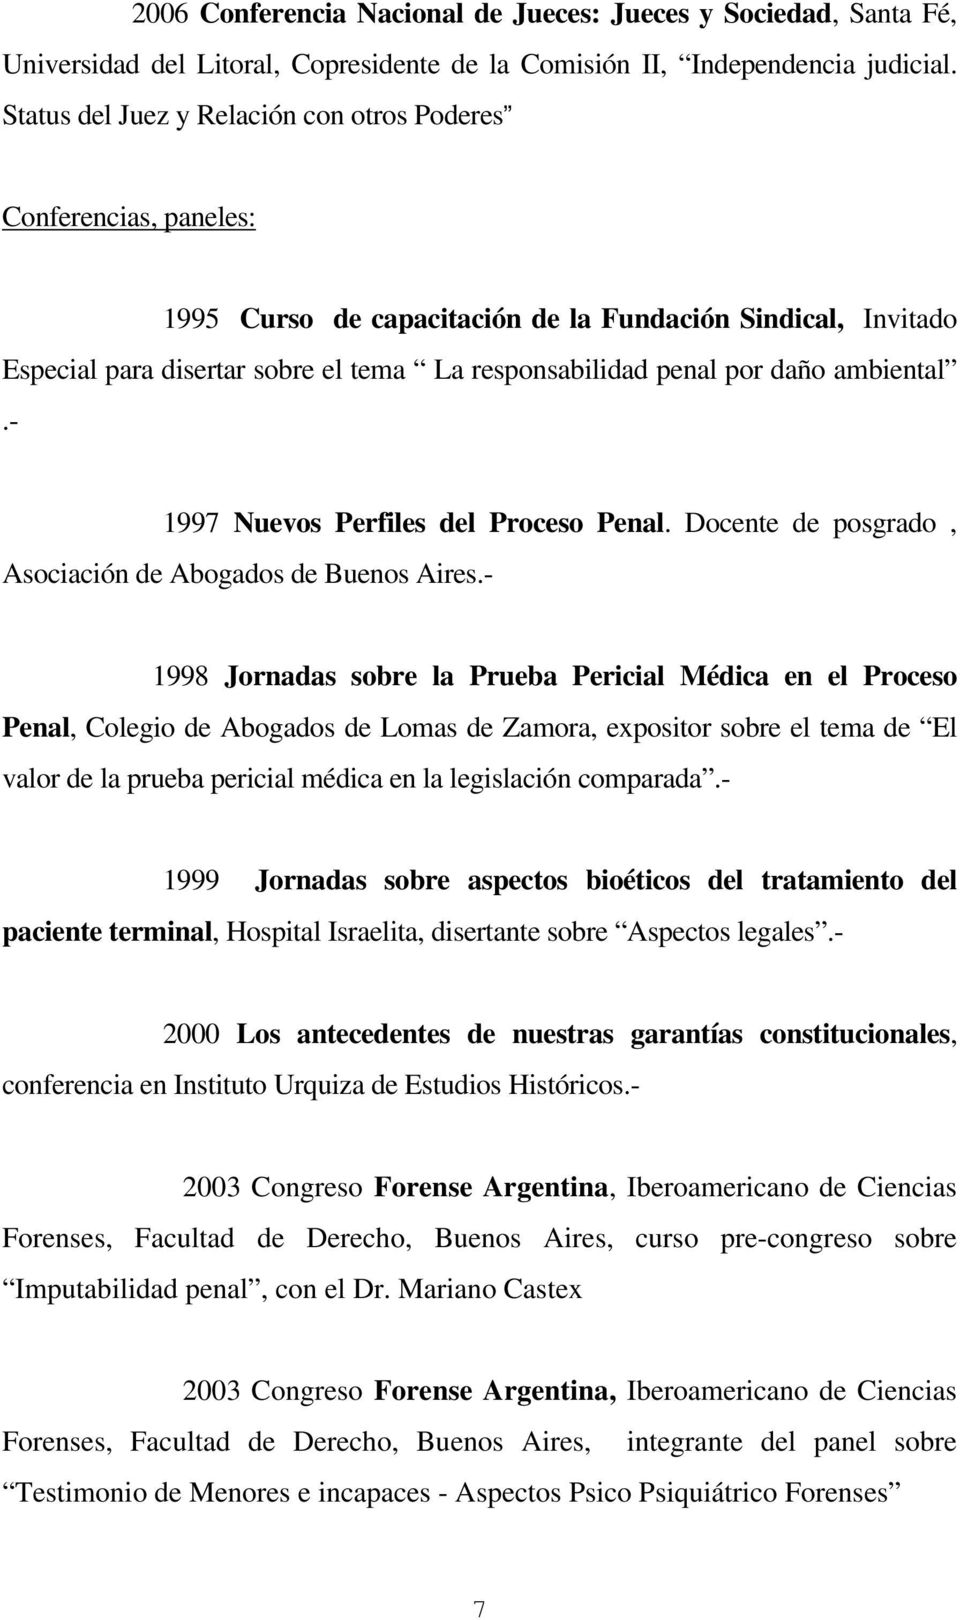 daño ambiental.- 1997 Nuevos Perfiles del Proceso Penal. Docente de posgrado, Asociación de Abogados de Buenos Aires.